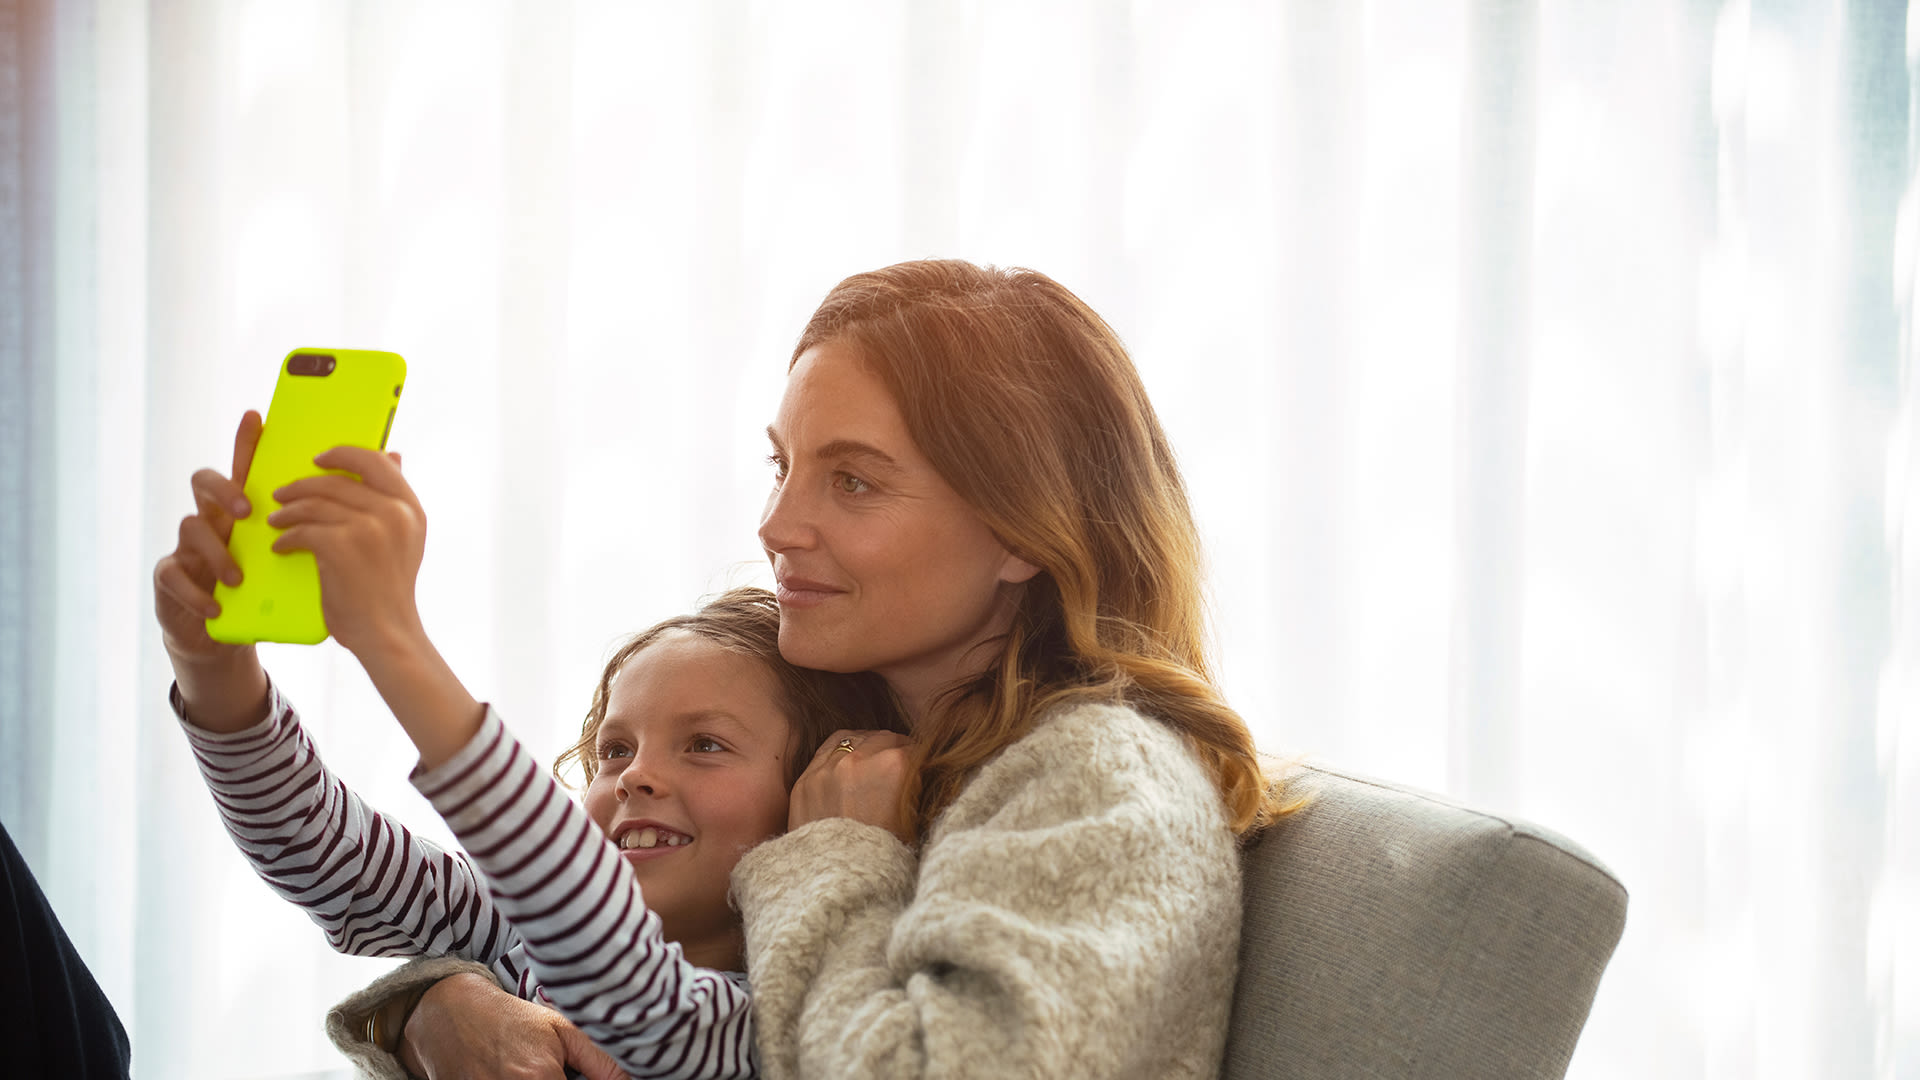 Kvinna i rödbrunt hår sitter i en soffa. I knät sitter ett barn och håller upp en mobil. Båda tittar på skärmen.